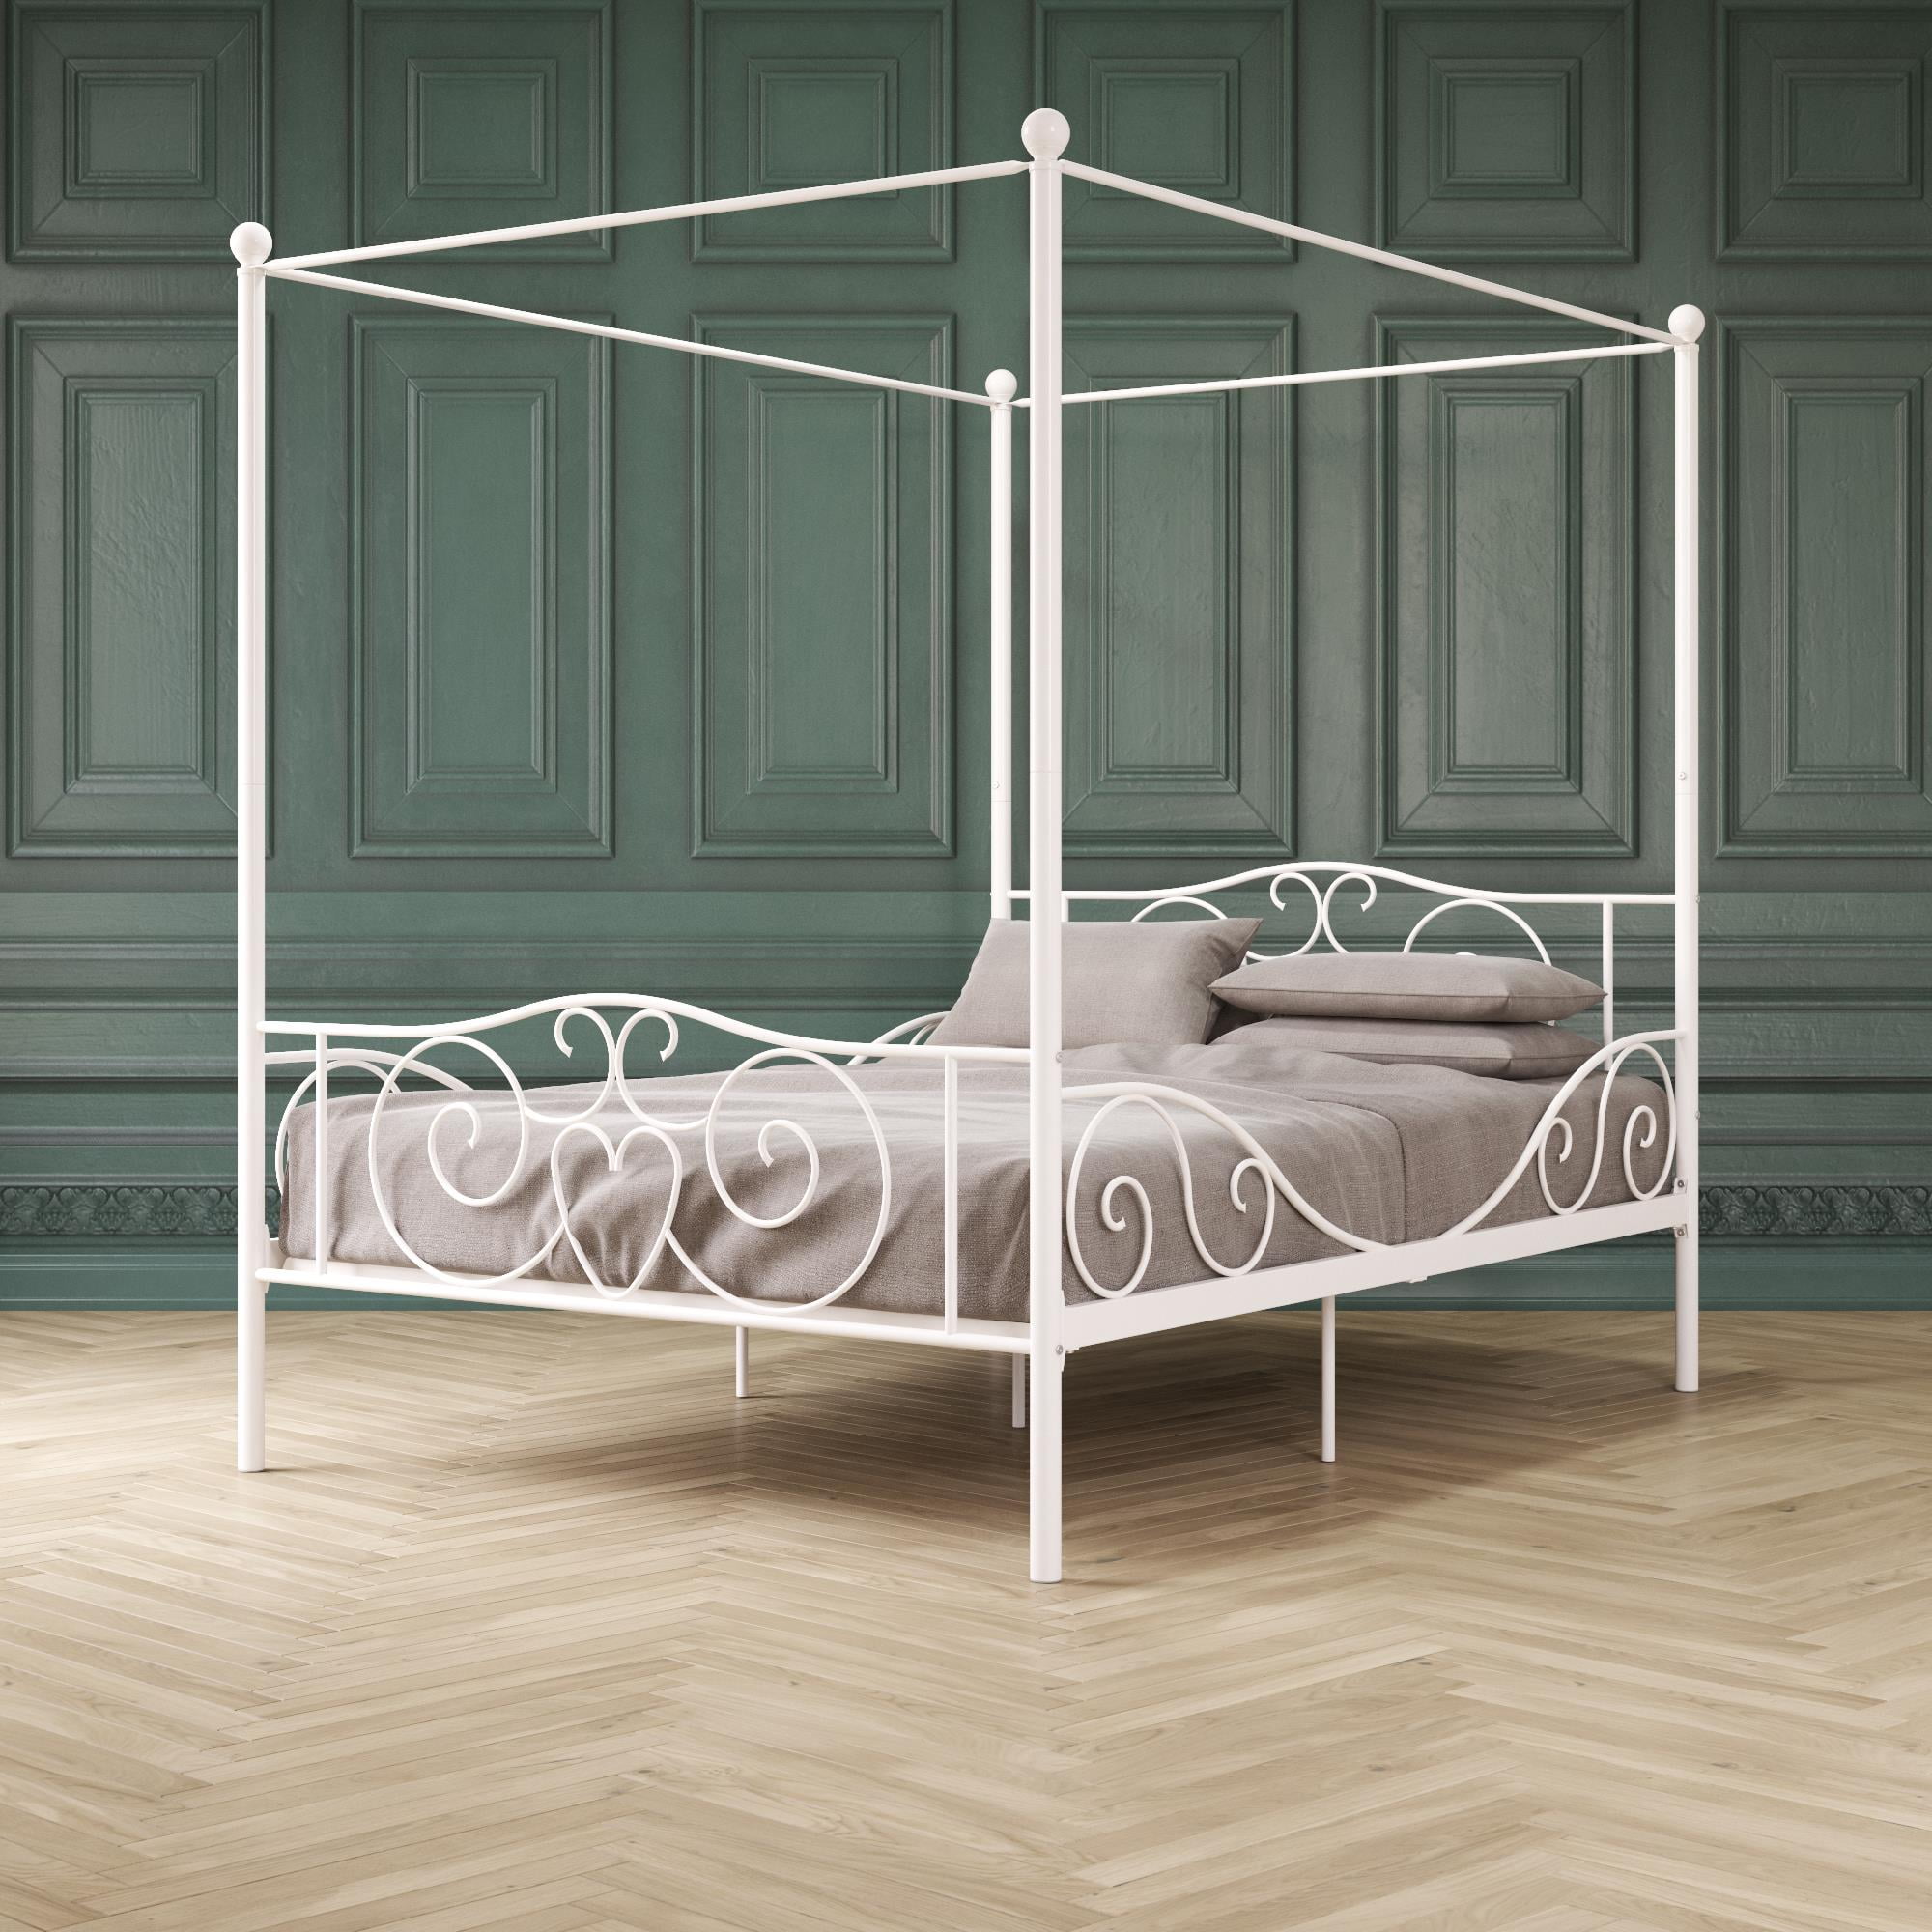 Elm Oak Canopy Metal Bed Full Size, White Canopy Bed Frame Full